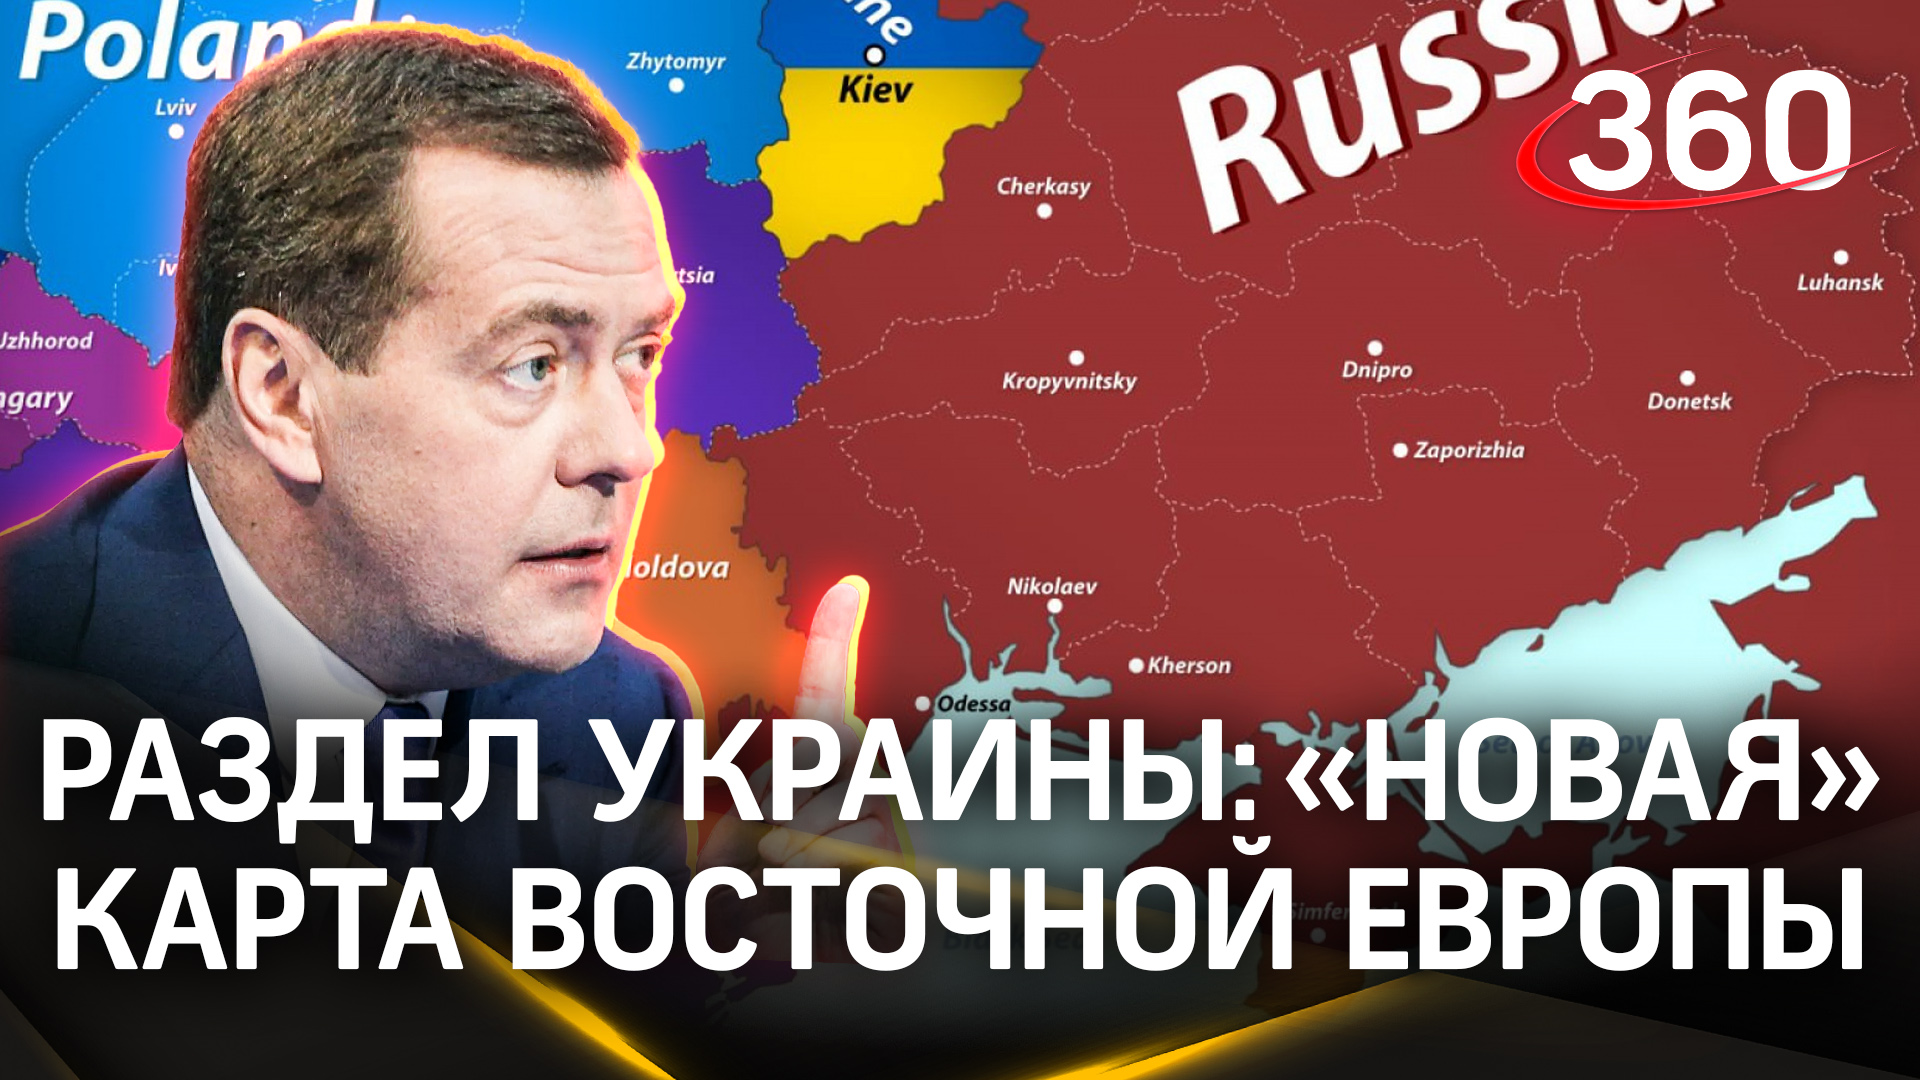 Дмитрий Медведев: «Украина - это, безусловно, Россия»